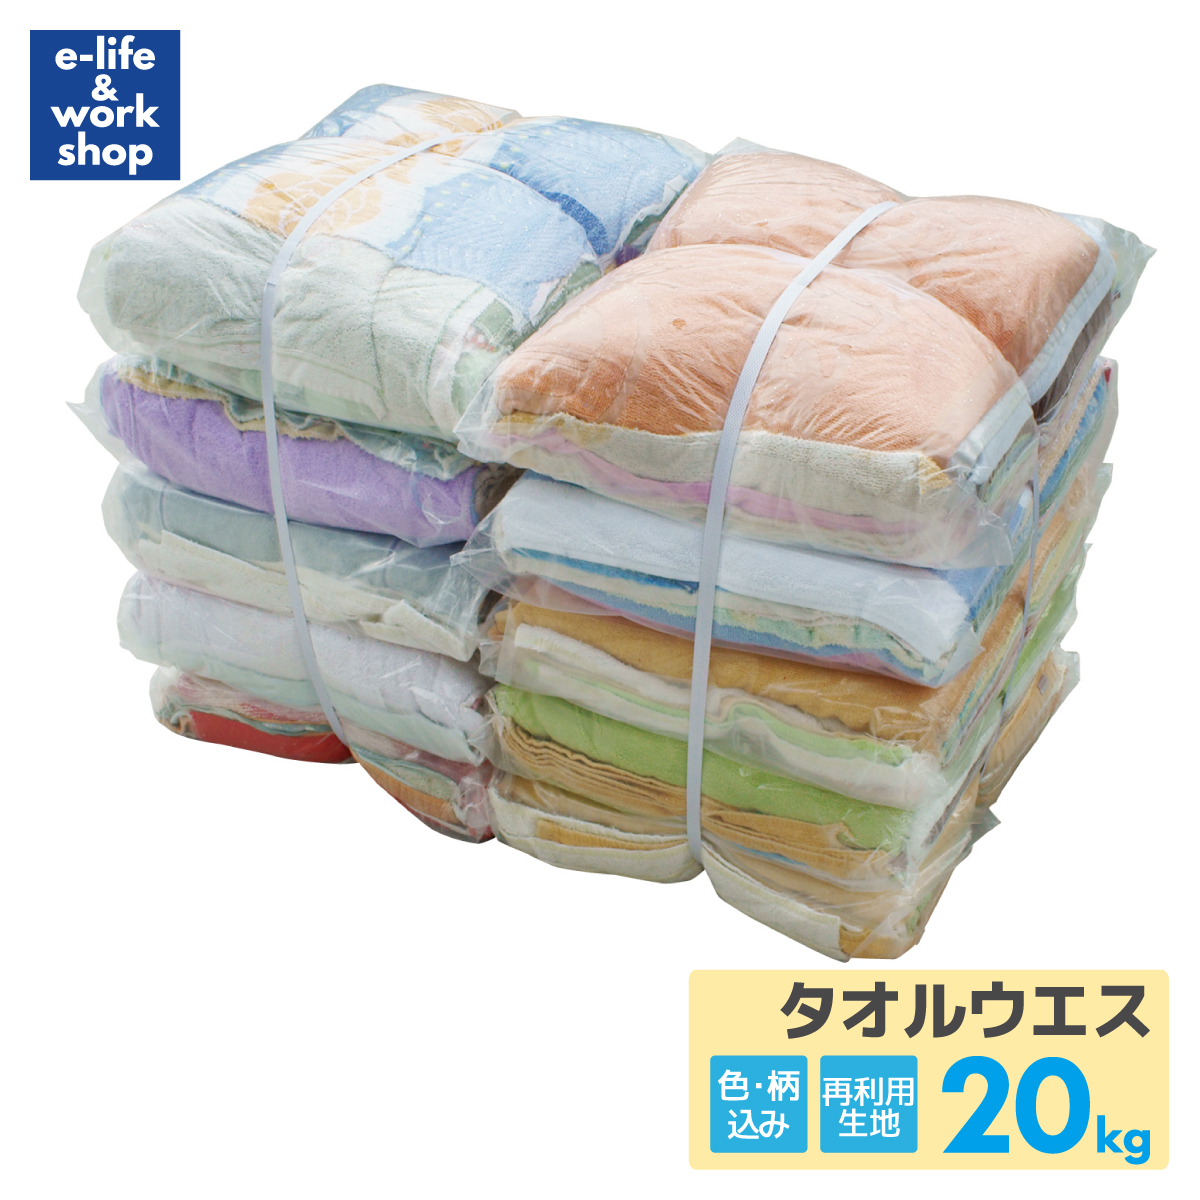 65%OFF【送料無料】 古タオル 使用済タオル 40枚 バスタオル5枚 ウエス 雑巾